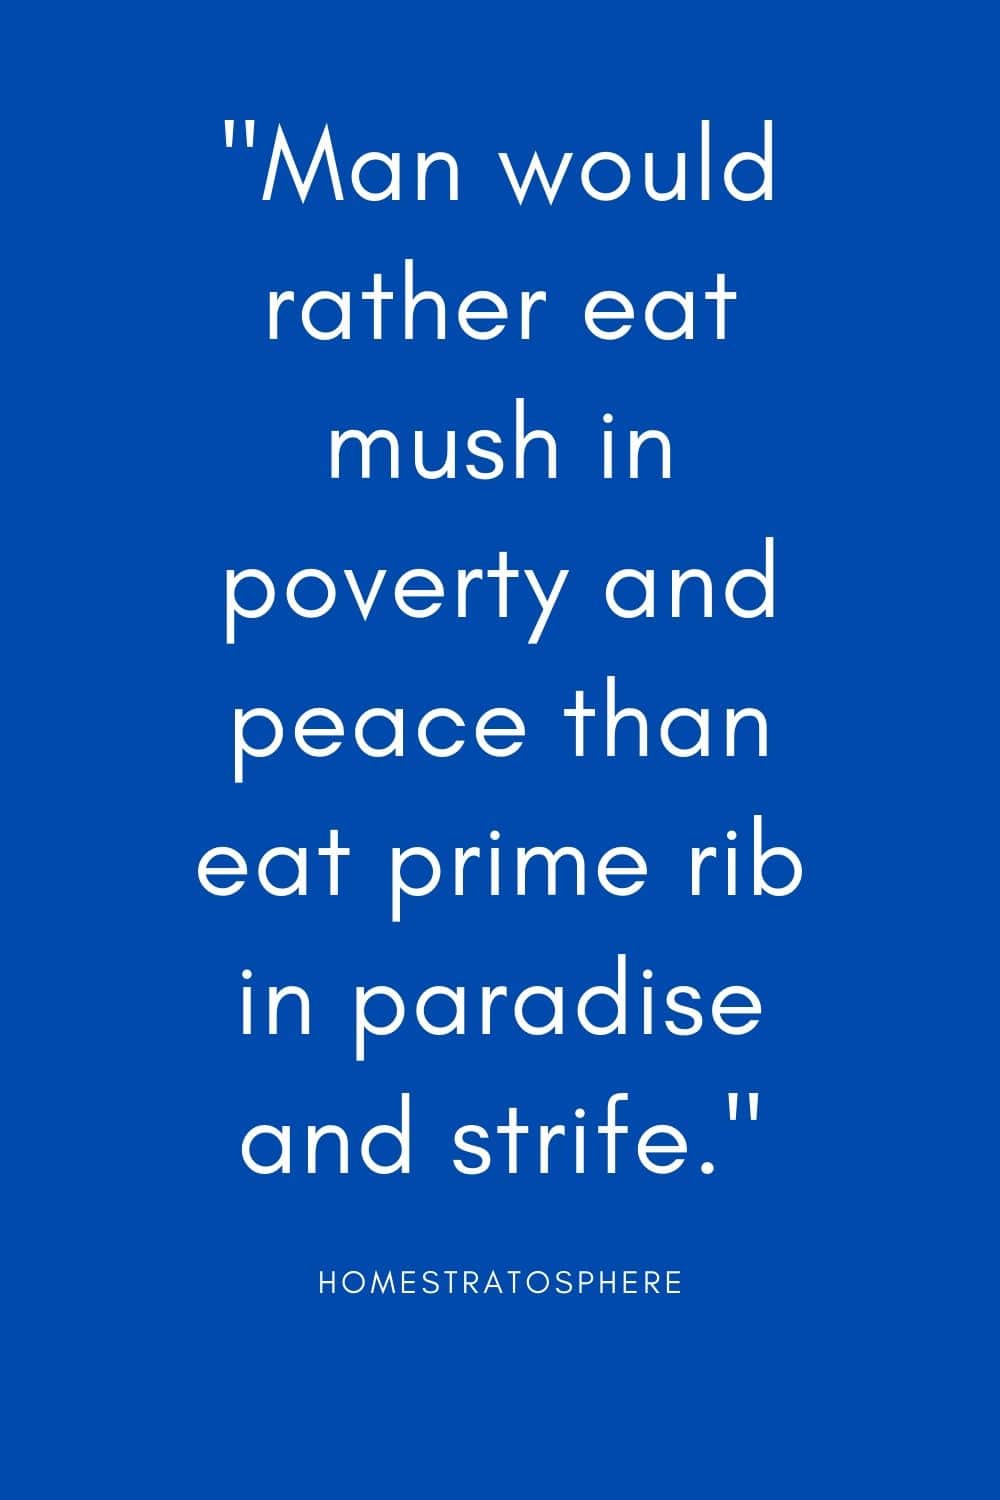 “人们宁愿在贫穷和平时吃稀饭，也不愿在天堂冲突时吃上等肋排。”